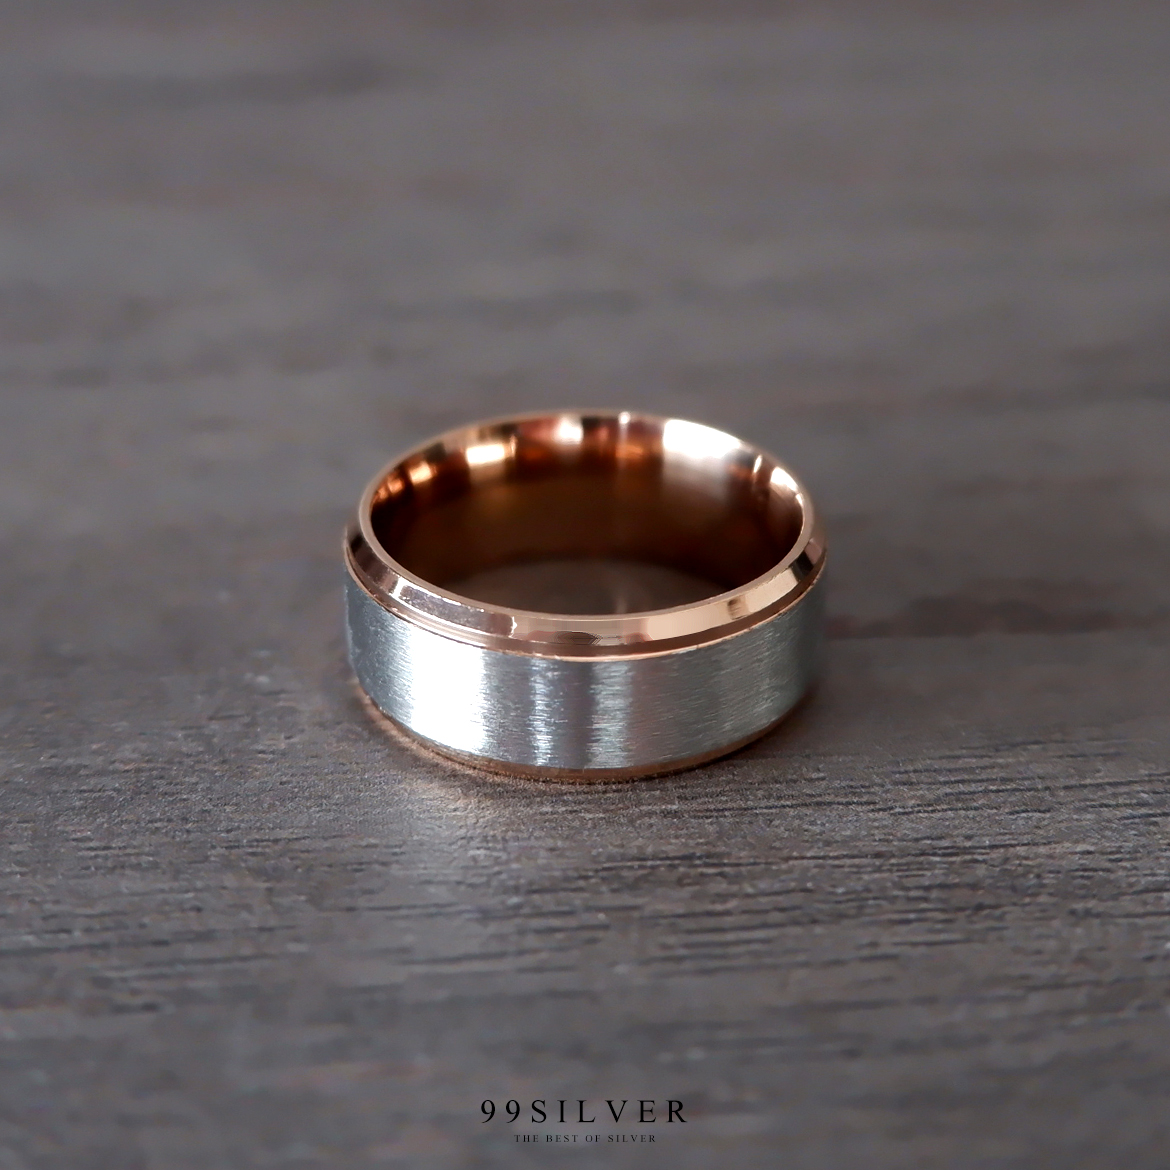 แหวน Pink Gold Edge ลดระดับขอบแหวนเล็กน้อย หน้ากว้าง 8 มม. ผิวด้านปัดแฮร์ไลน์